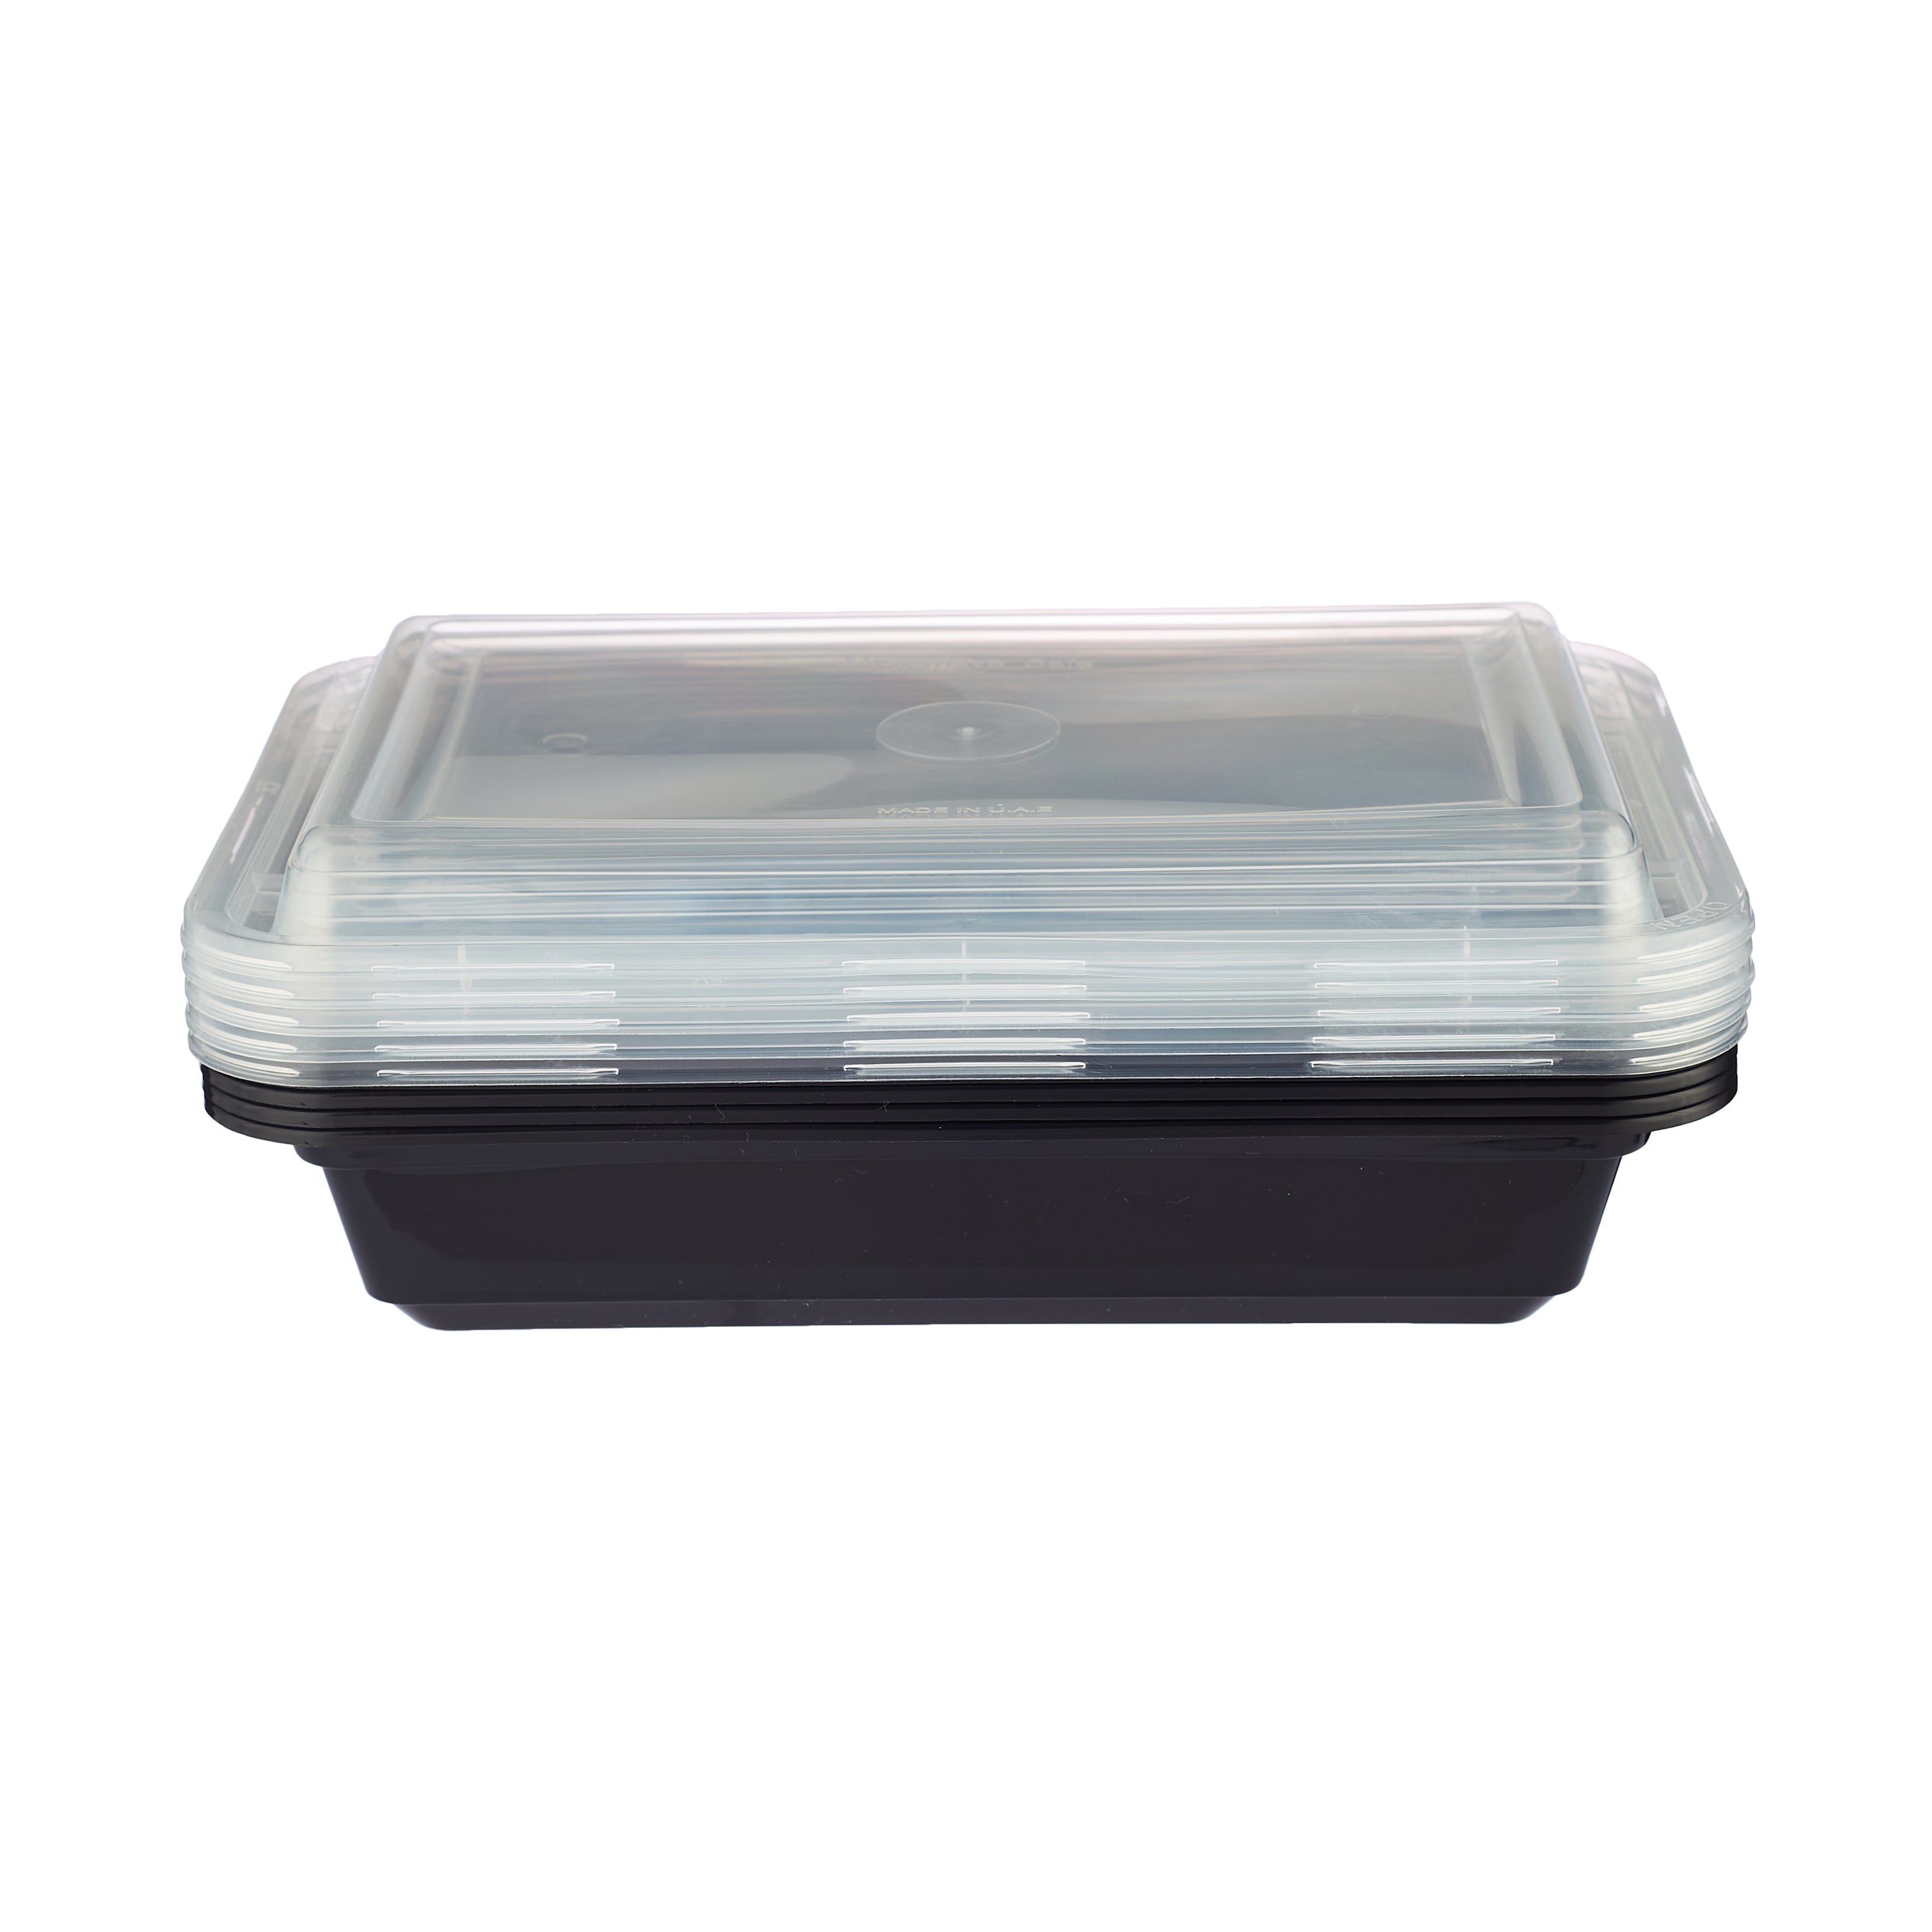 High Quality 28 oz. Rectangular Black Plastic Deli Container Set